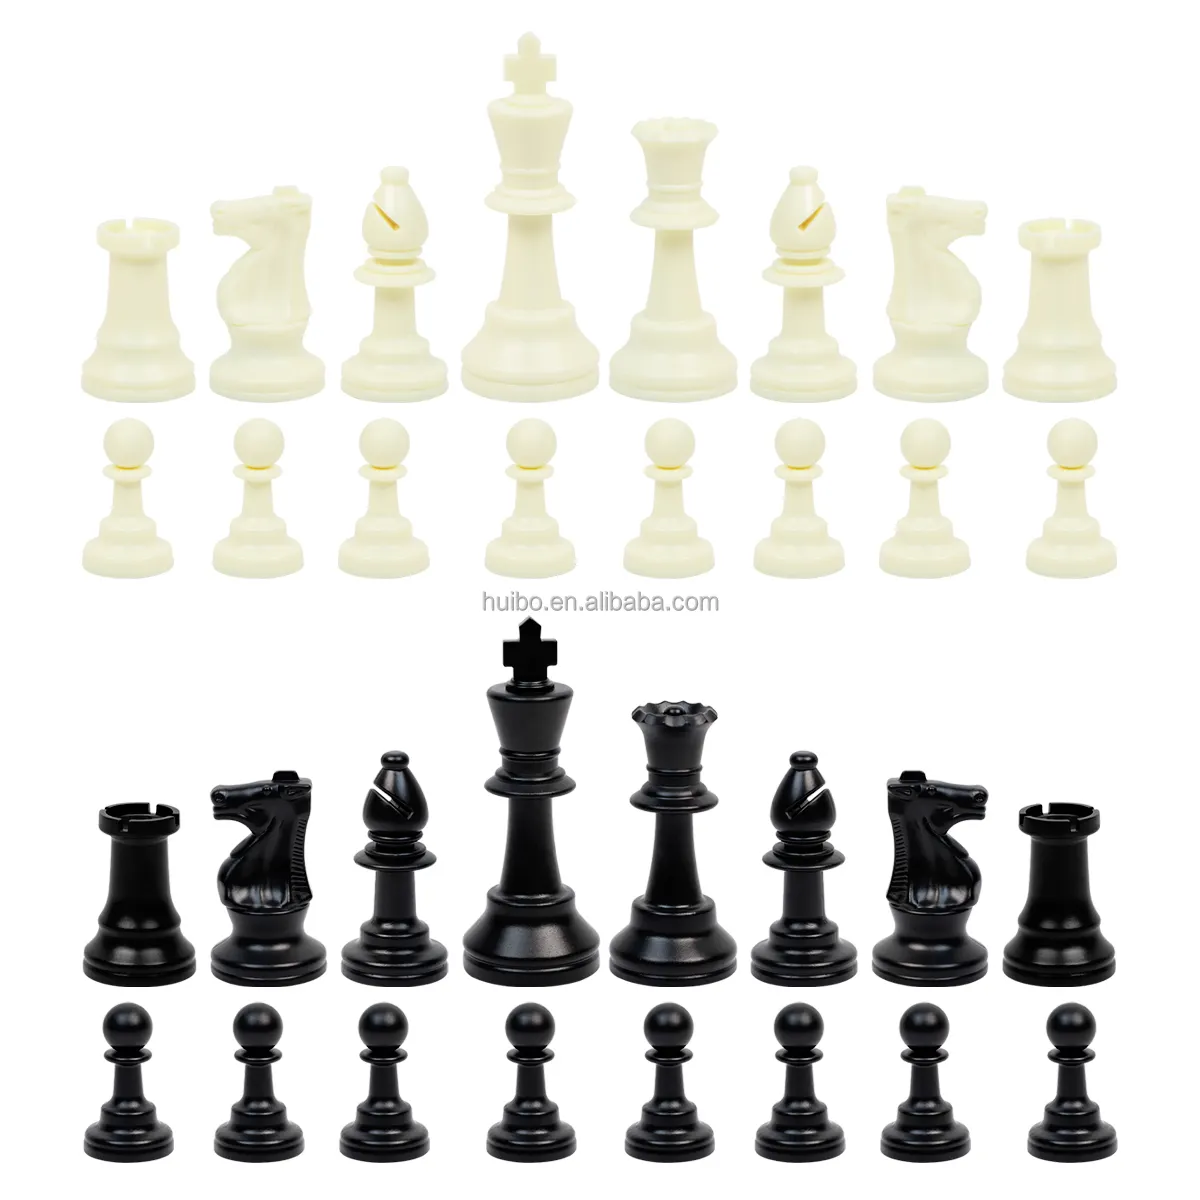 Tournament schach stück 3.75 zoll könig schach set